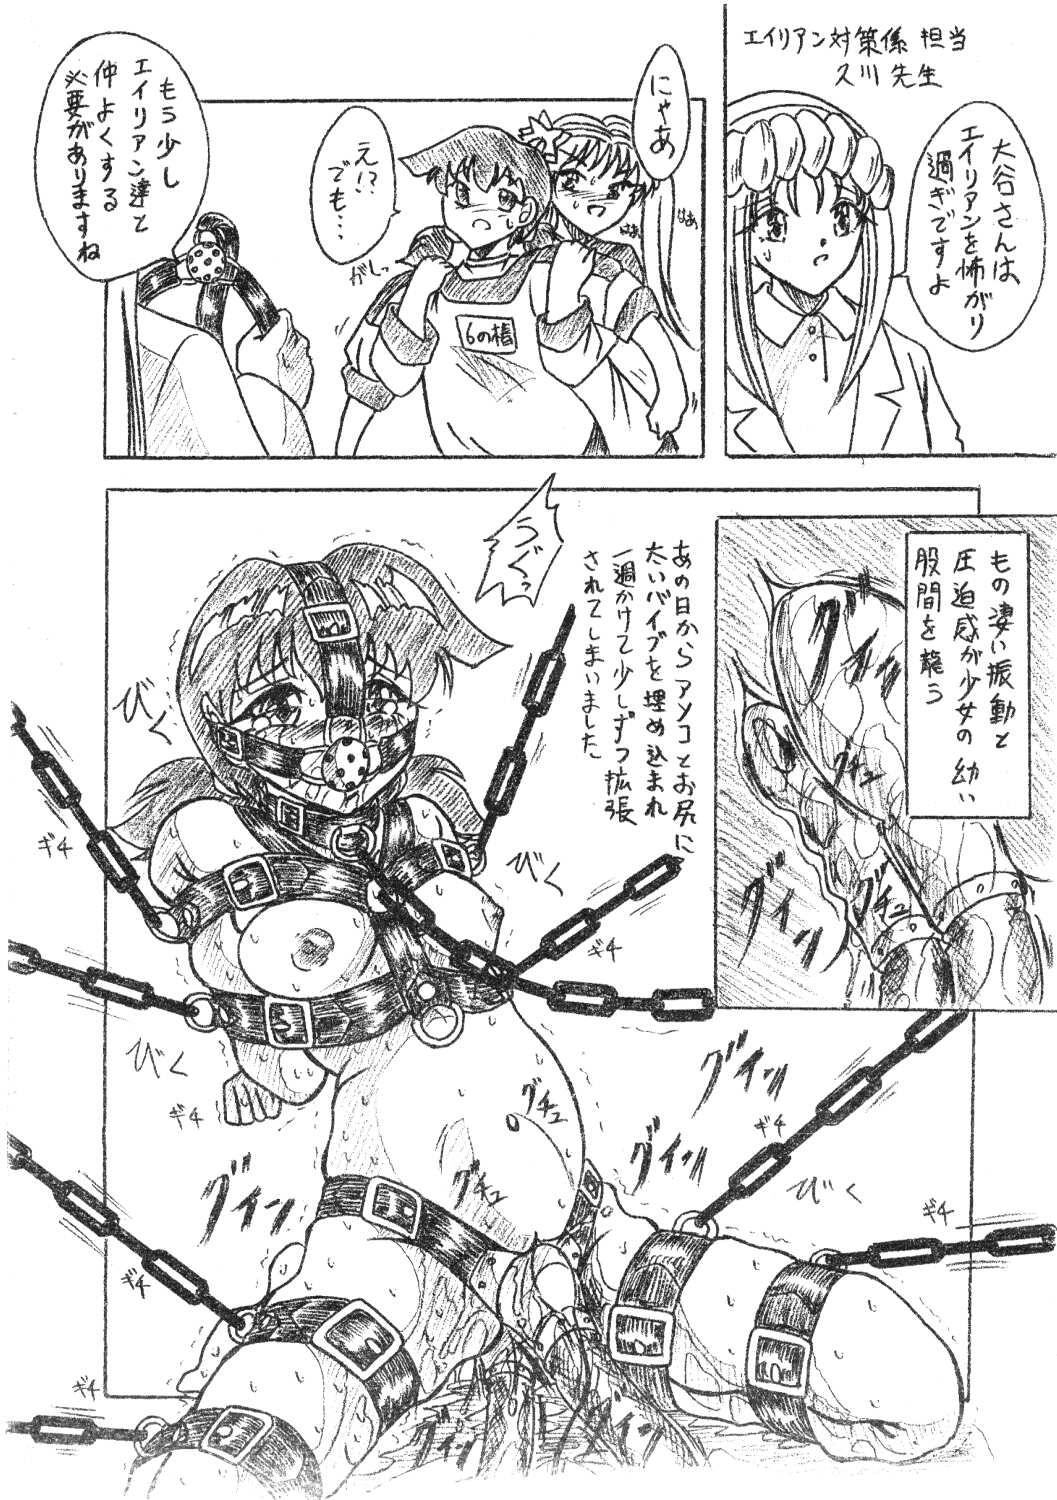 Sixtynine Vivian Bessatsu 7 - Nikukai Monzetsu Shokushu - Alien 9 Chaturbate - Page 2